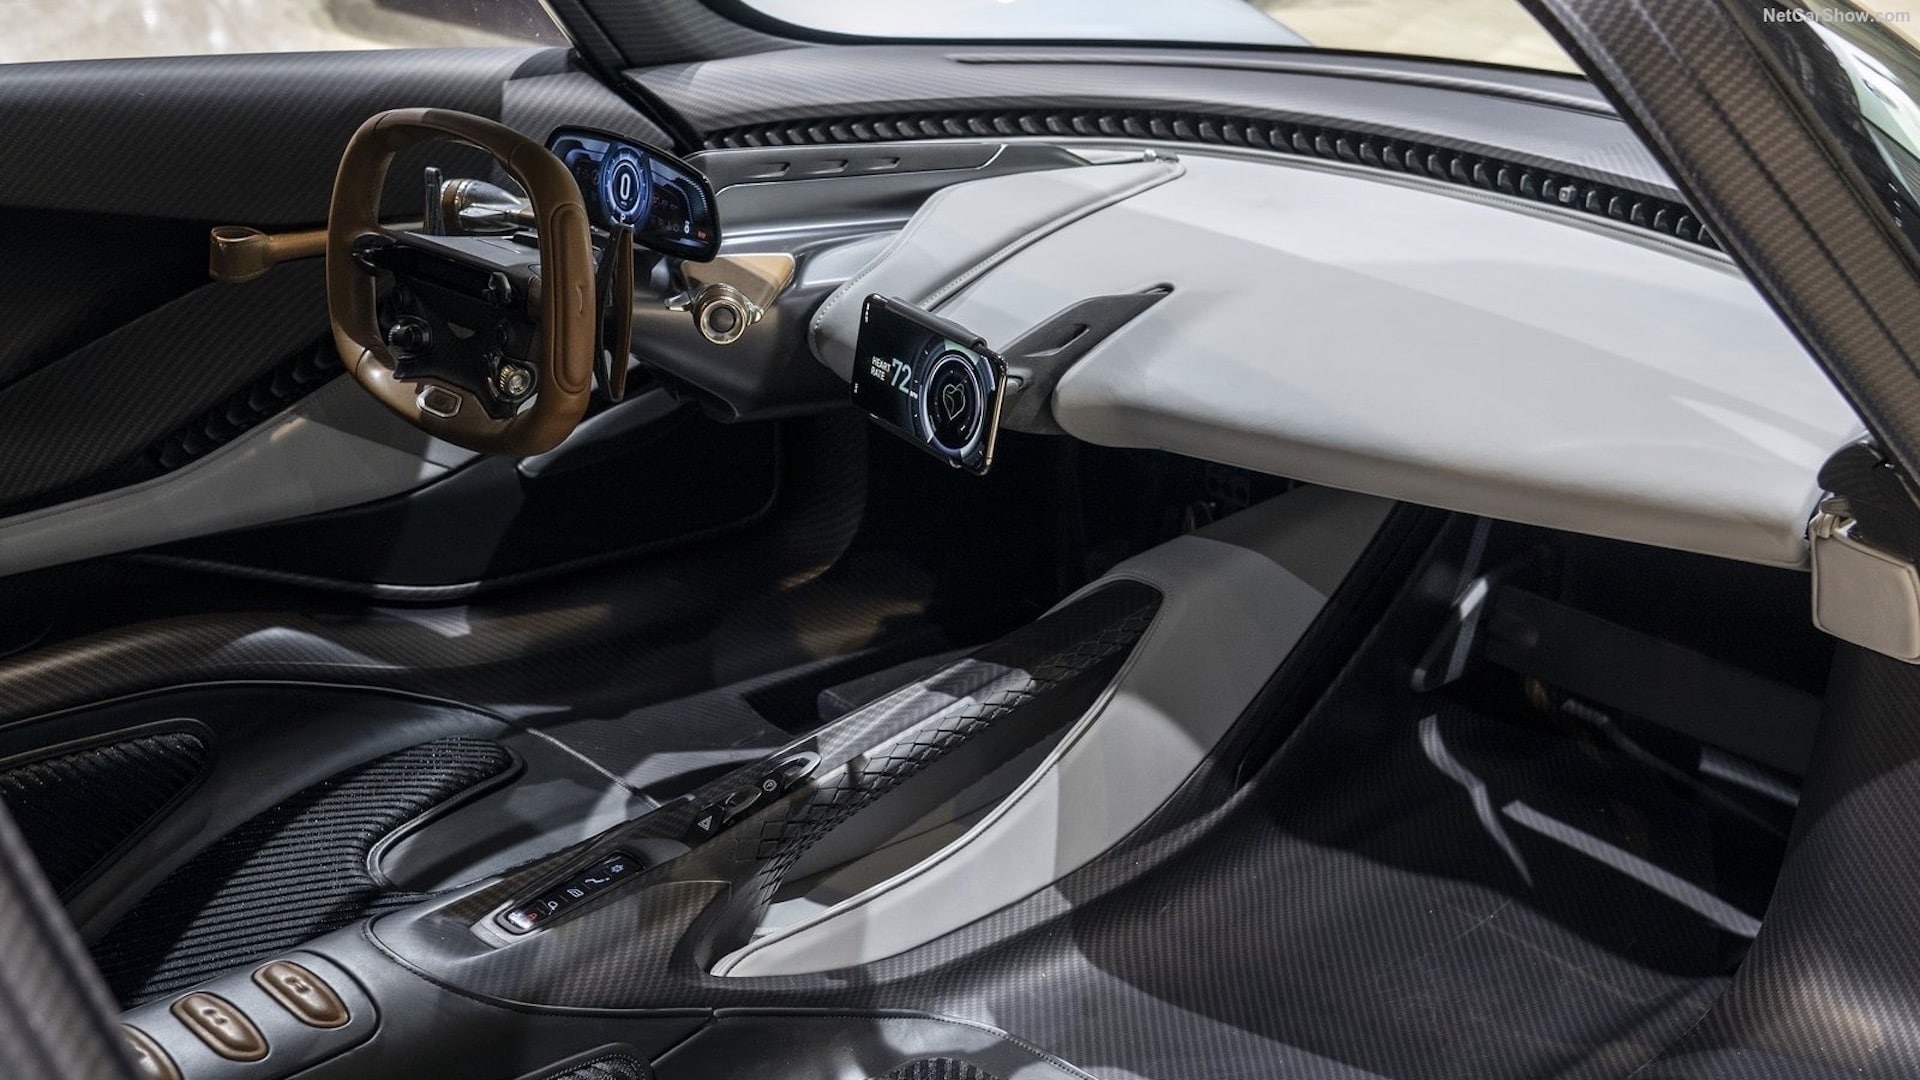 Interior of the 2020 Aston Martin Valhalla prototype